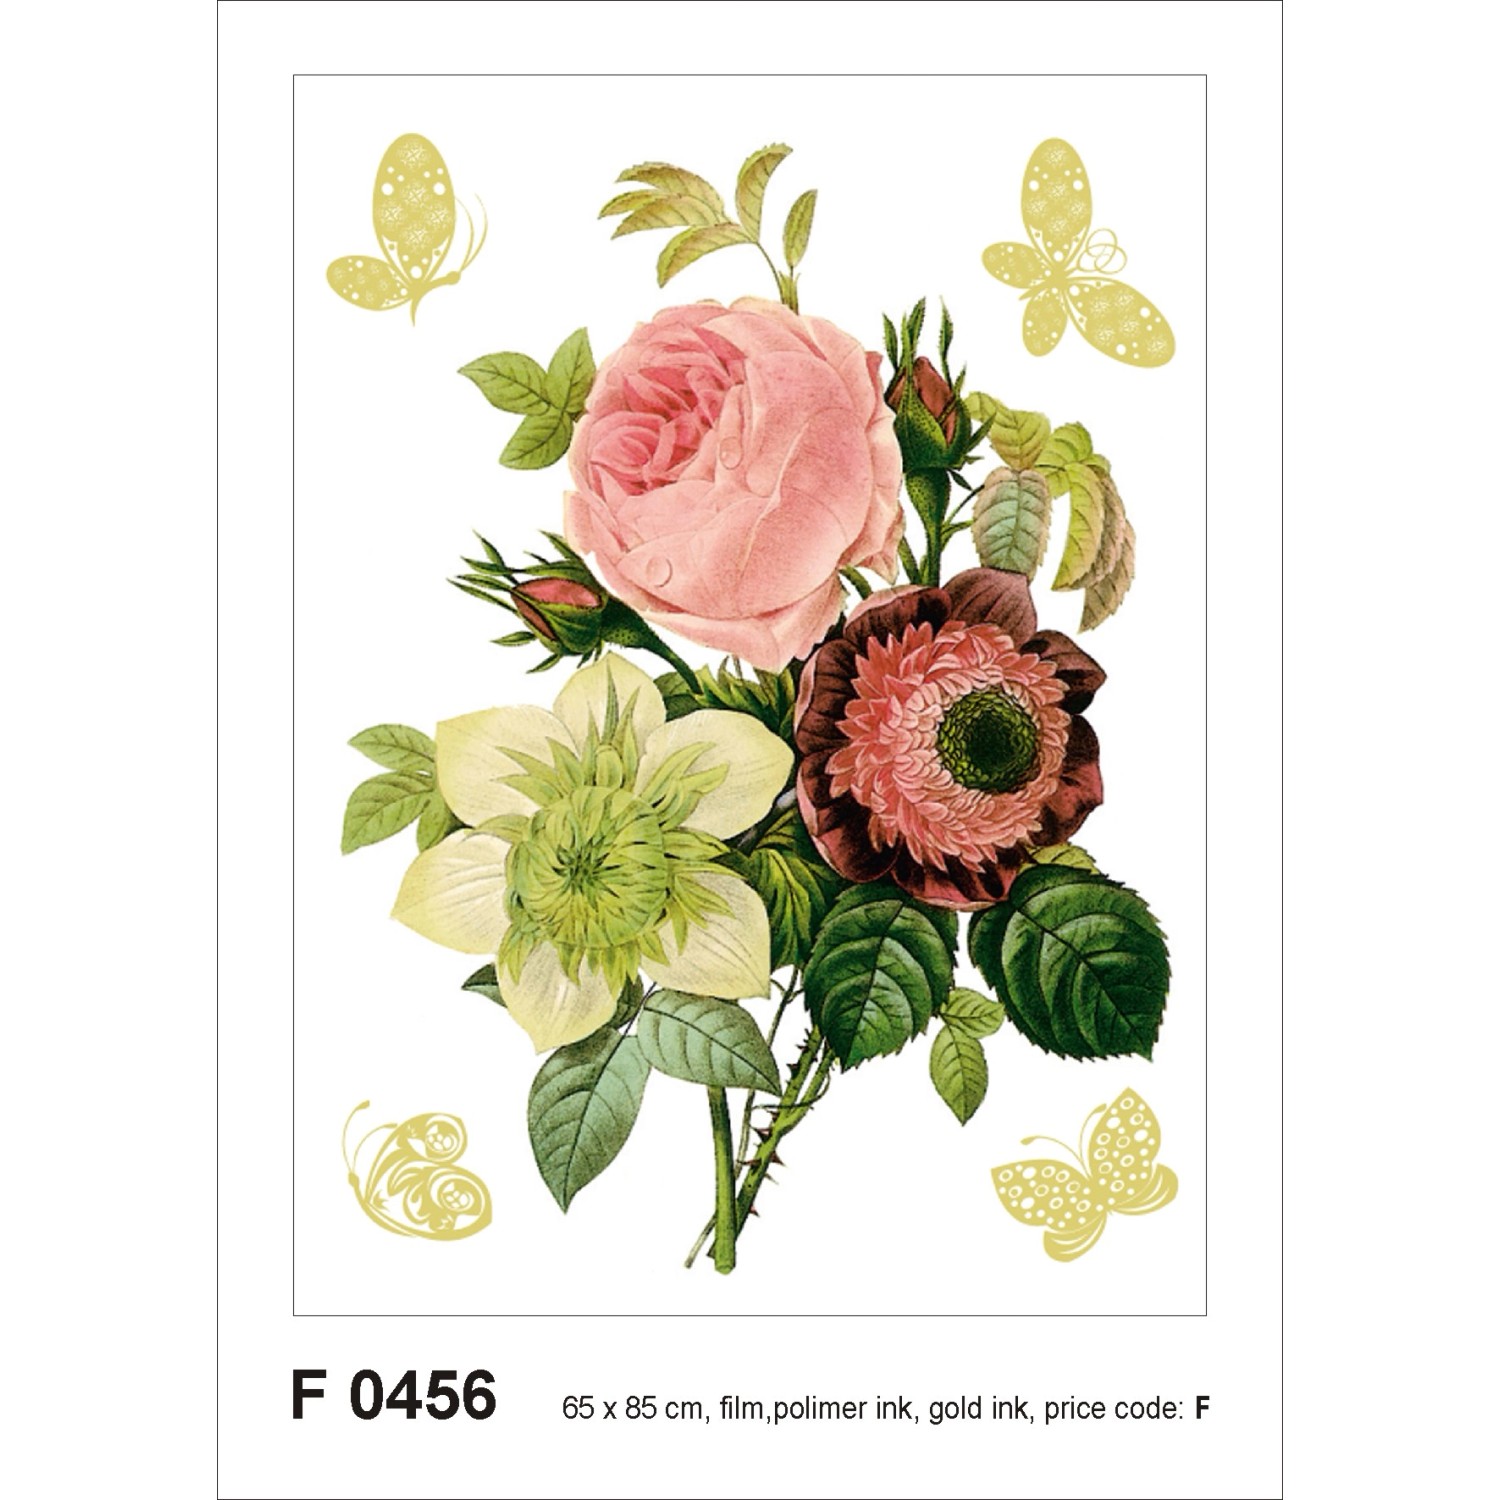 Sanders & Sanders Wandtattoo Blumenstillleben Grün und Rosa 65 x 85 cm 6002 günstig online kaufen